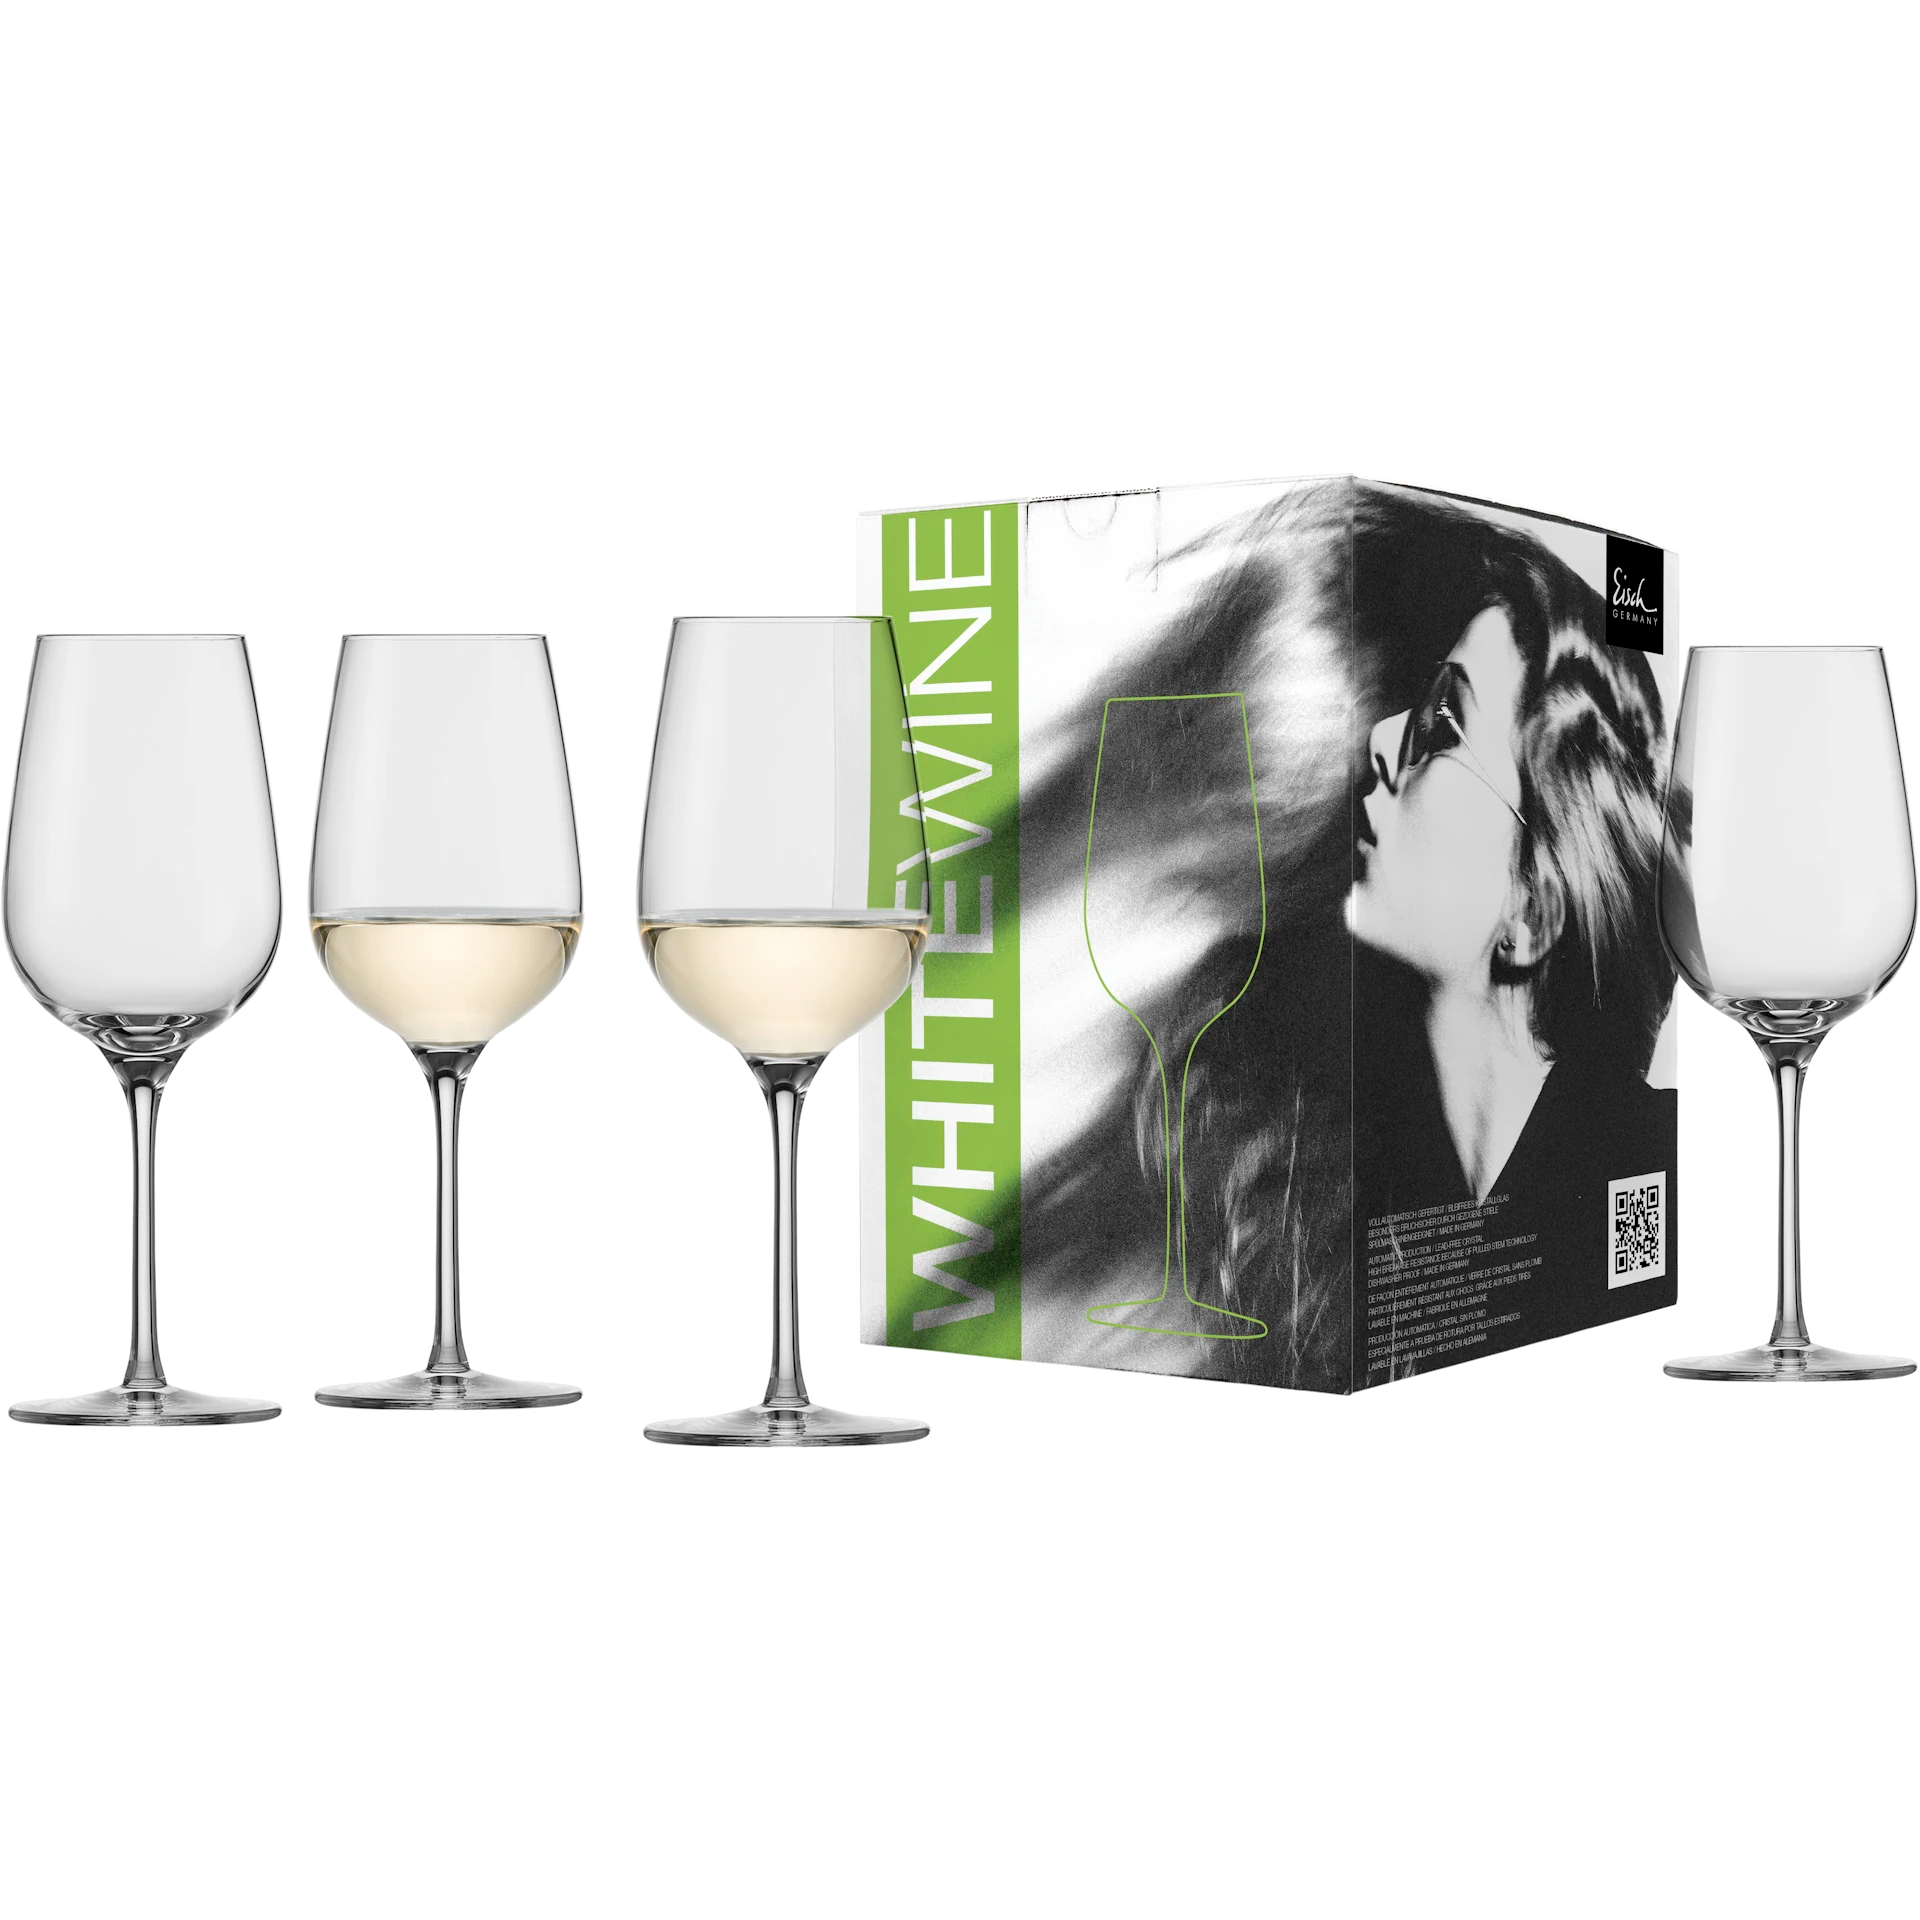 Eisch Weißweinglas Vinezza - 4 Stück im Geschenkkarton 550/3